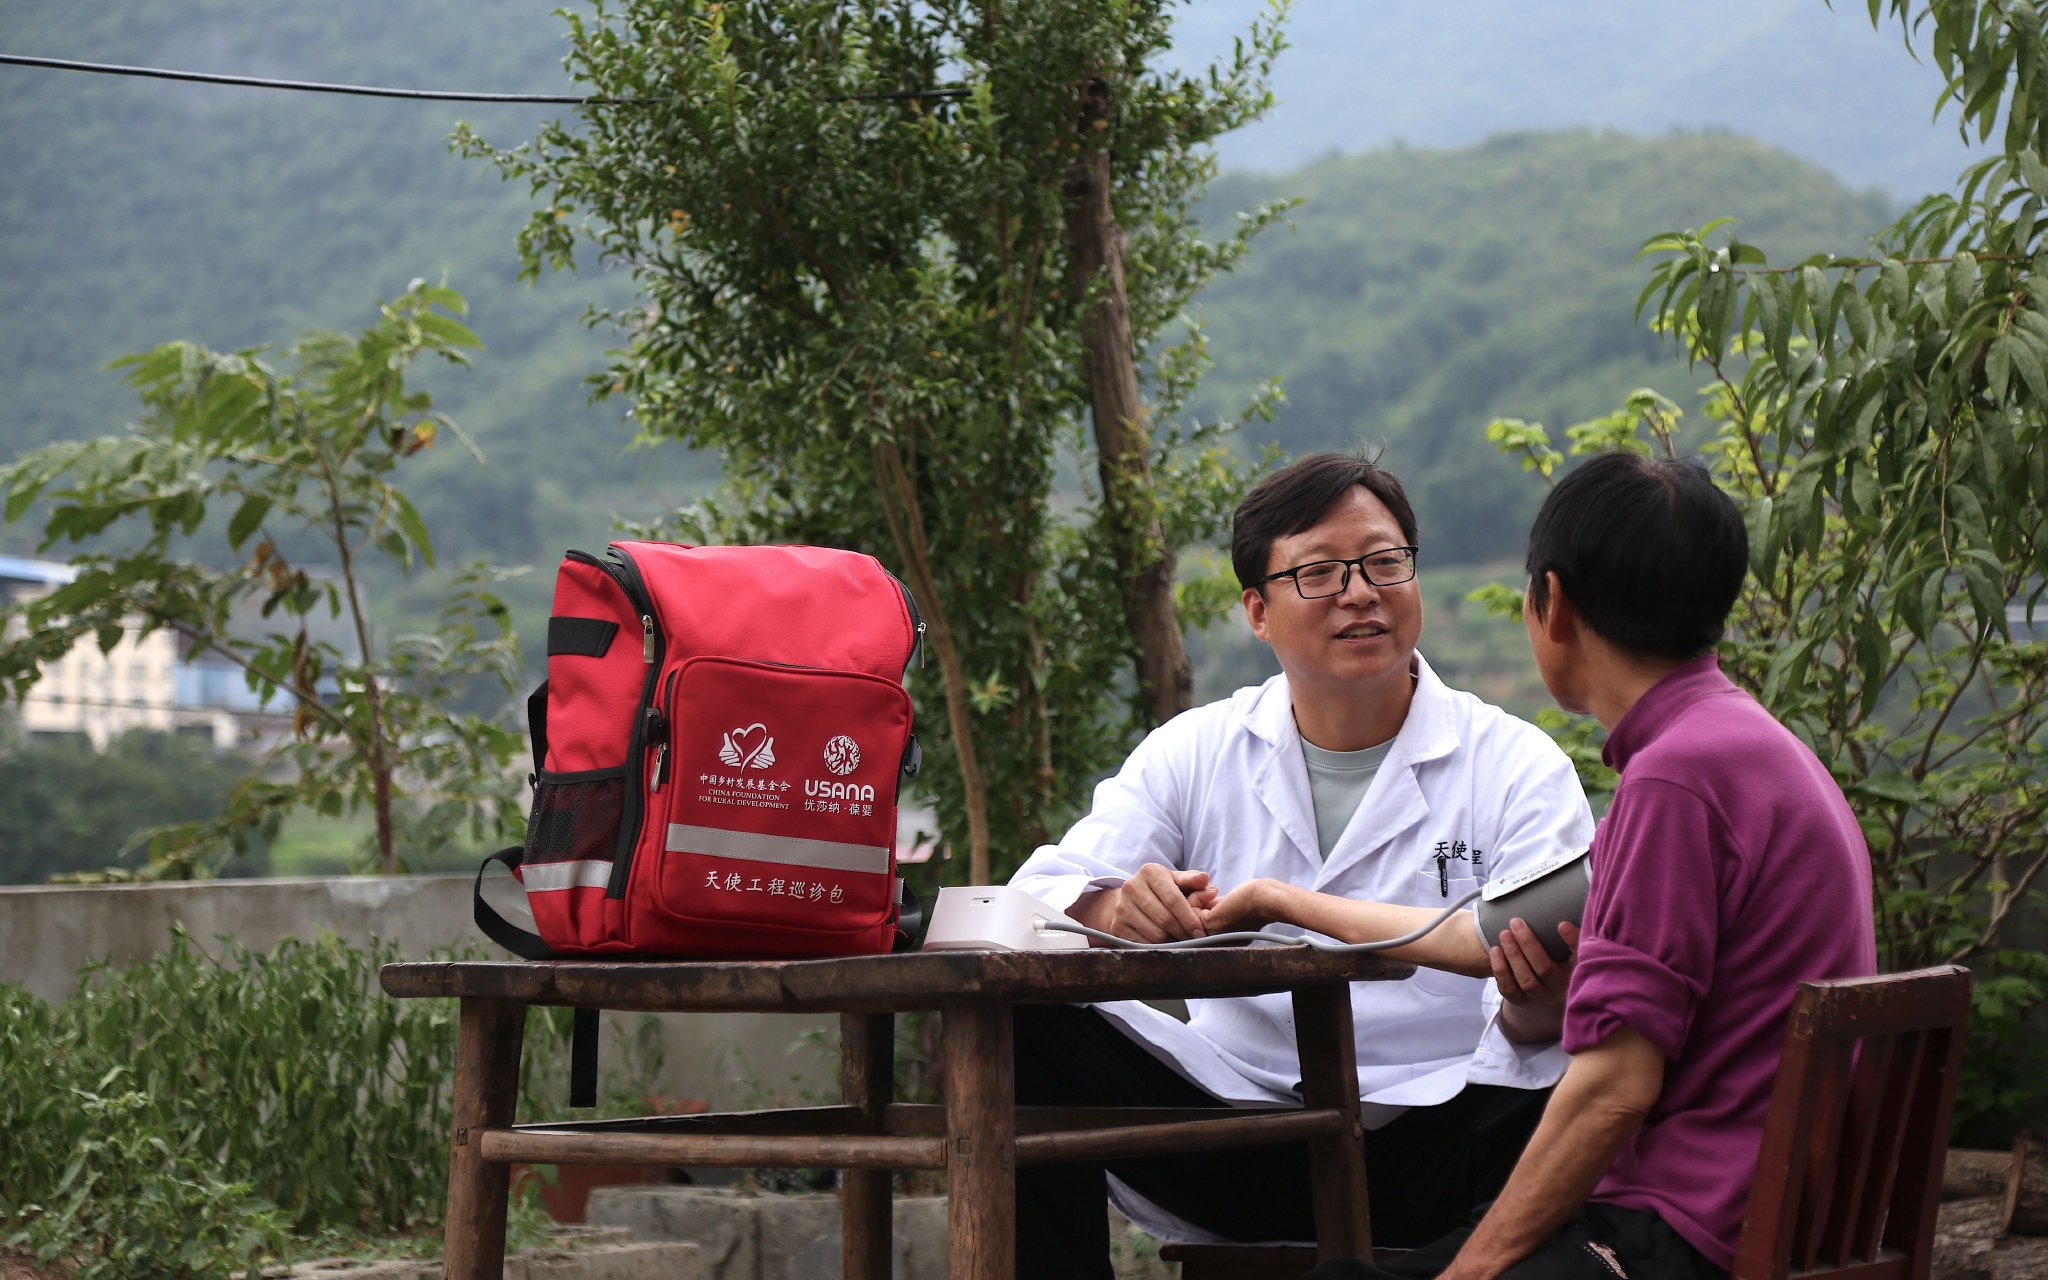 中國鄉村發展基金會的「天使工程巡診包」。受訪者供圖